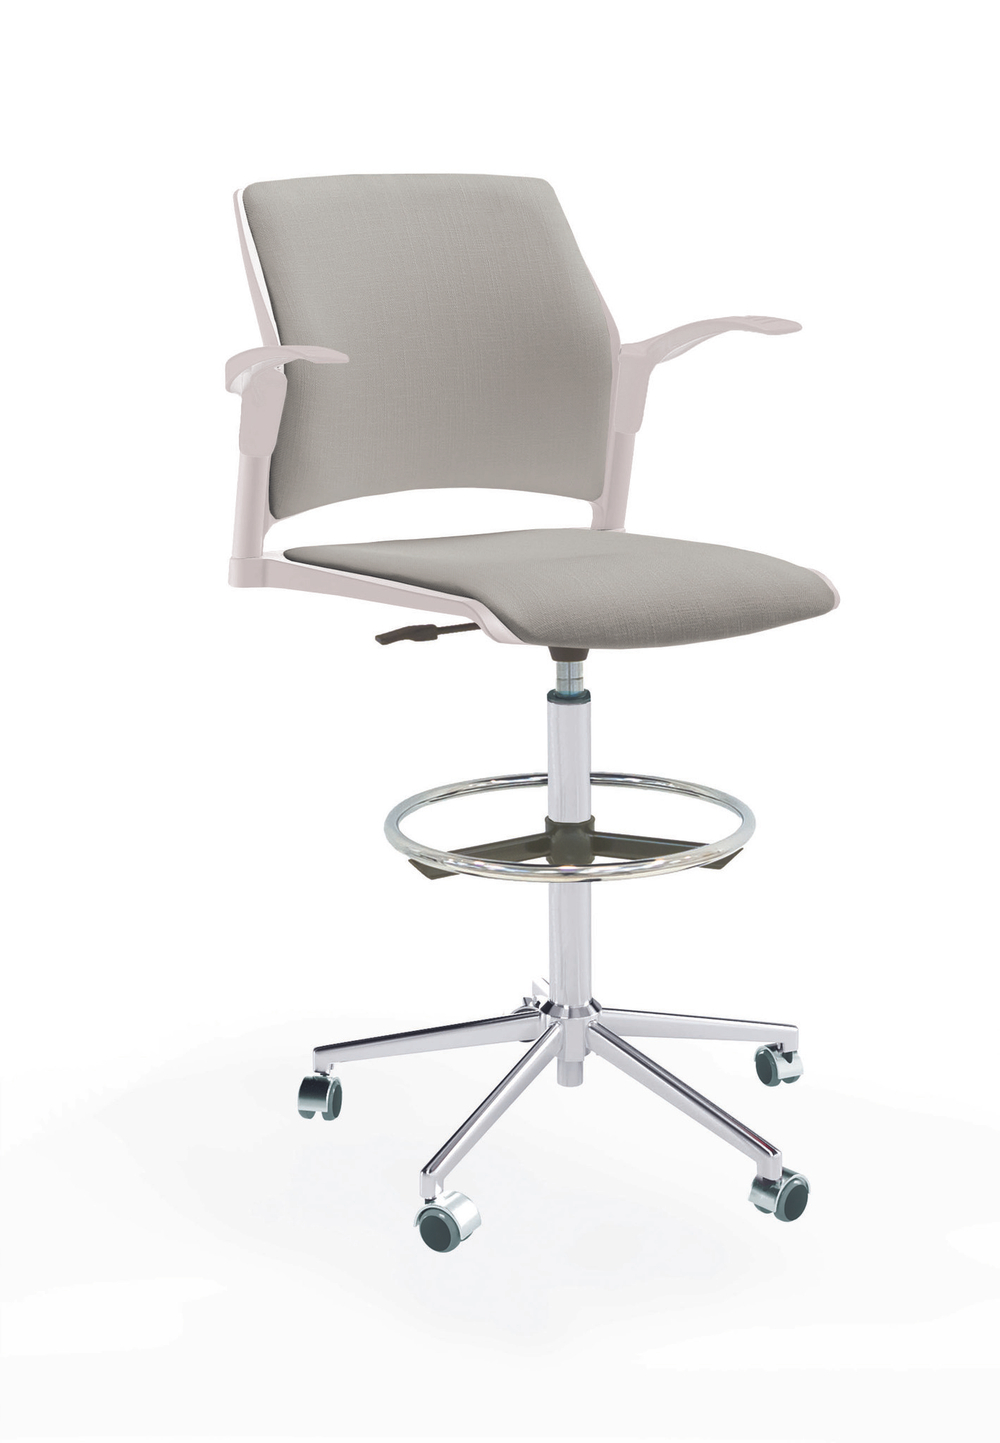 Кресло Rewind каркас хром, пластик белый, база стальная хромированная, с открытыми подлокотниками, сиденье и спинка светло-серые